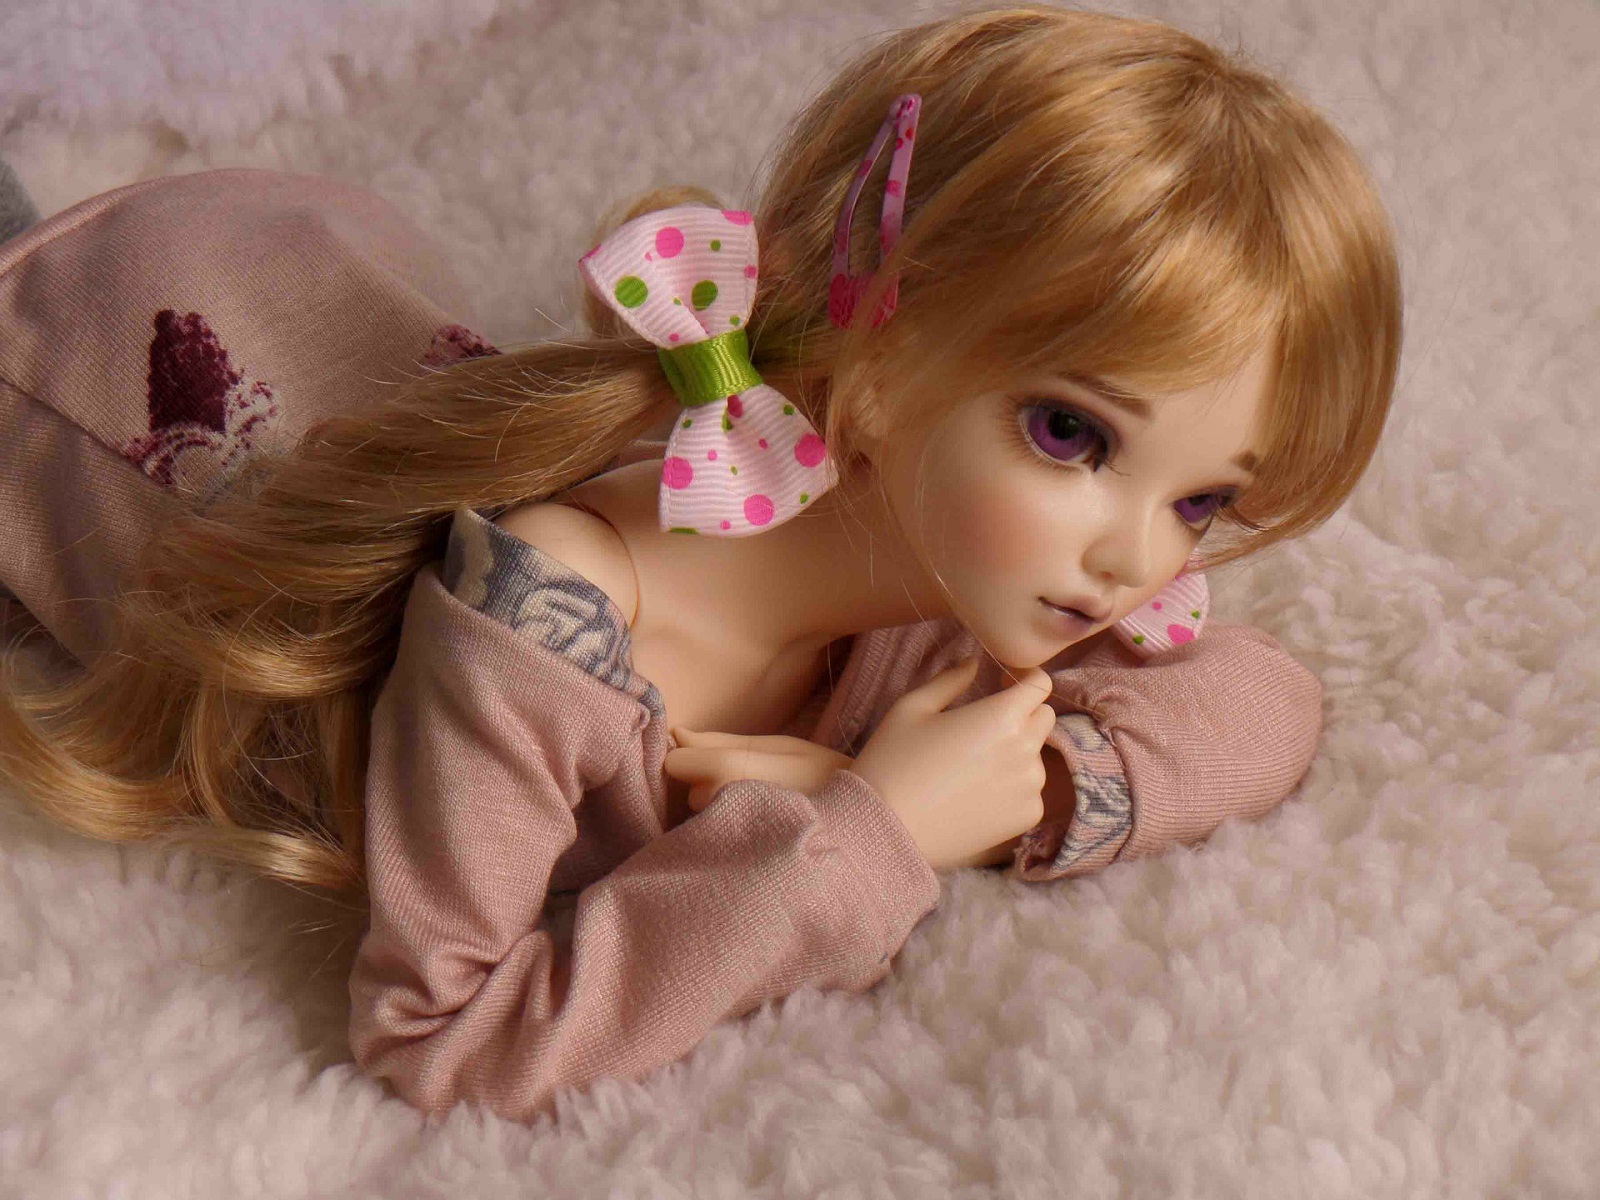 Hậu trường chụp ảnh búp bê Barbie nổi tiếng  VnExpress Số hóa